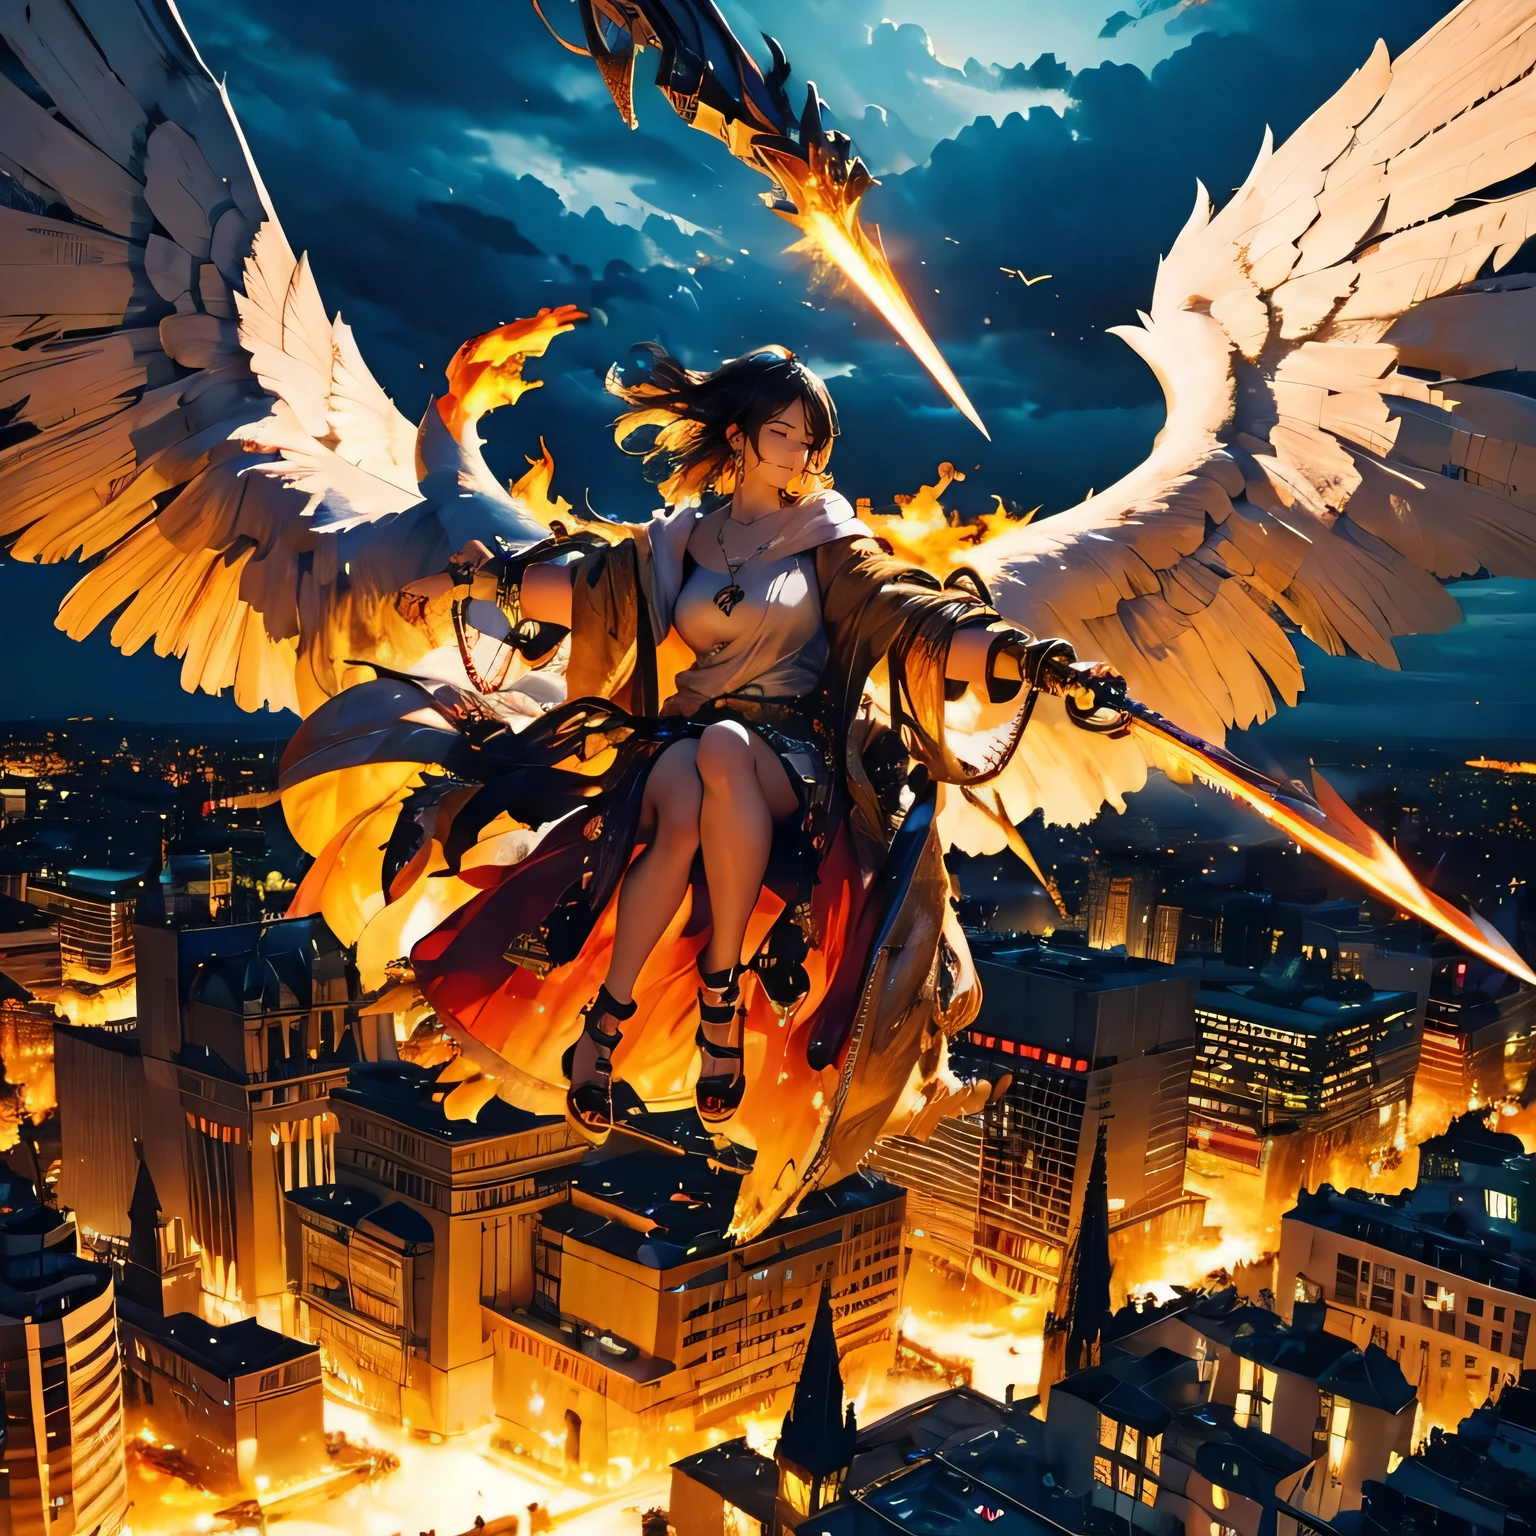 (机械的), 雷雨, 剑着火, 项链着火, (启示录), (飞越城市), 巨大的天使, 在城市, 巨大的火焰看起来像翅膀, 眼睛下垂, 困,